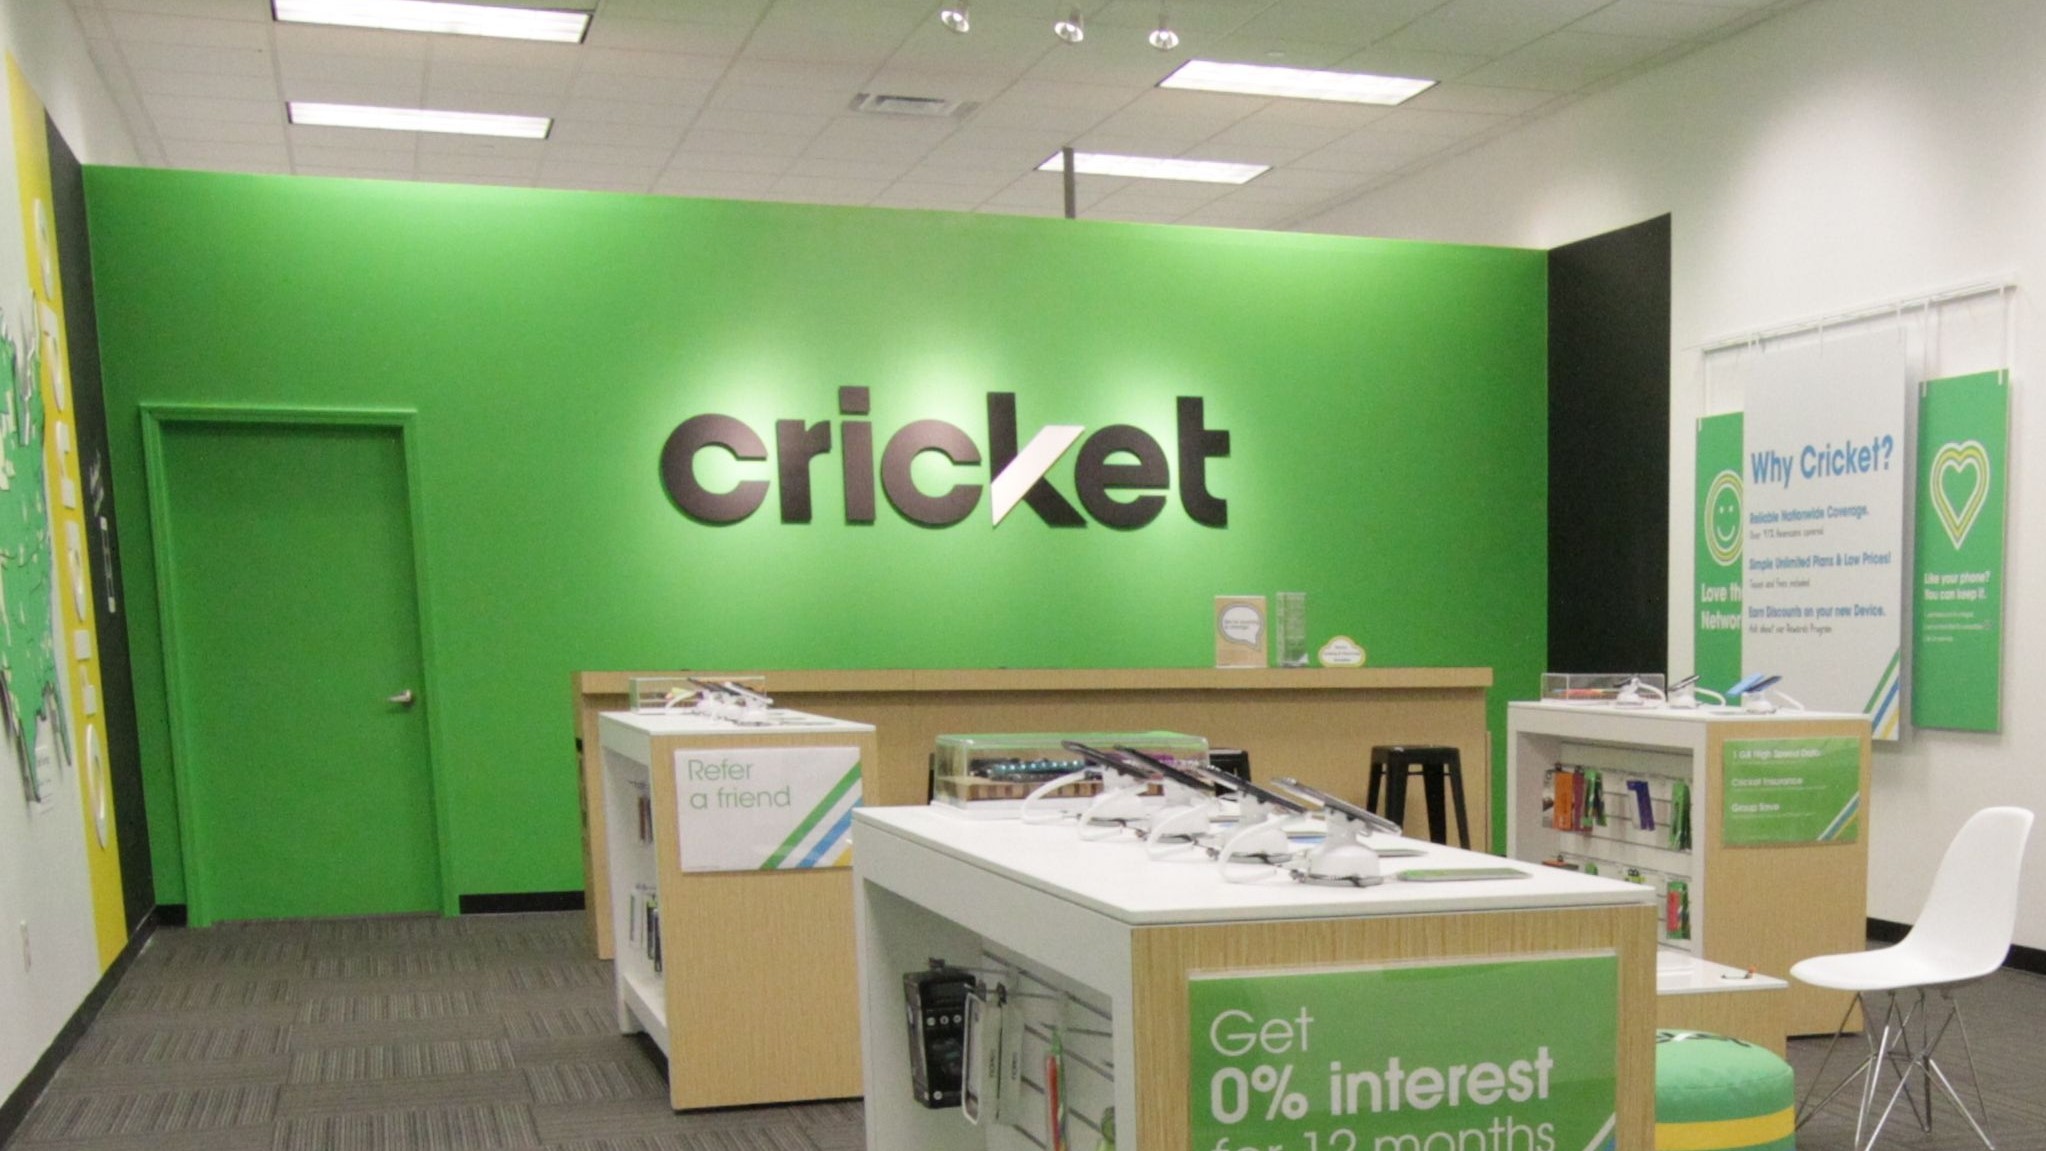 Cricket wireless retail store interior